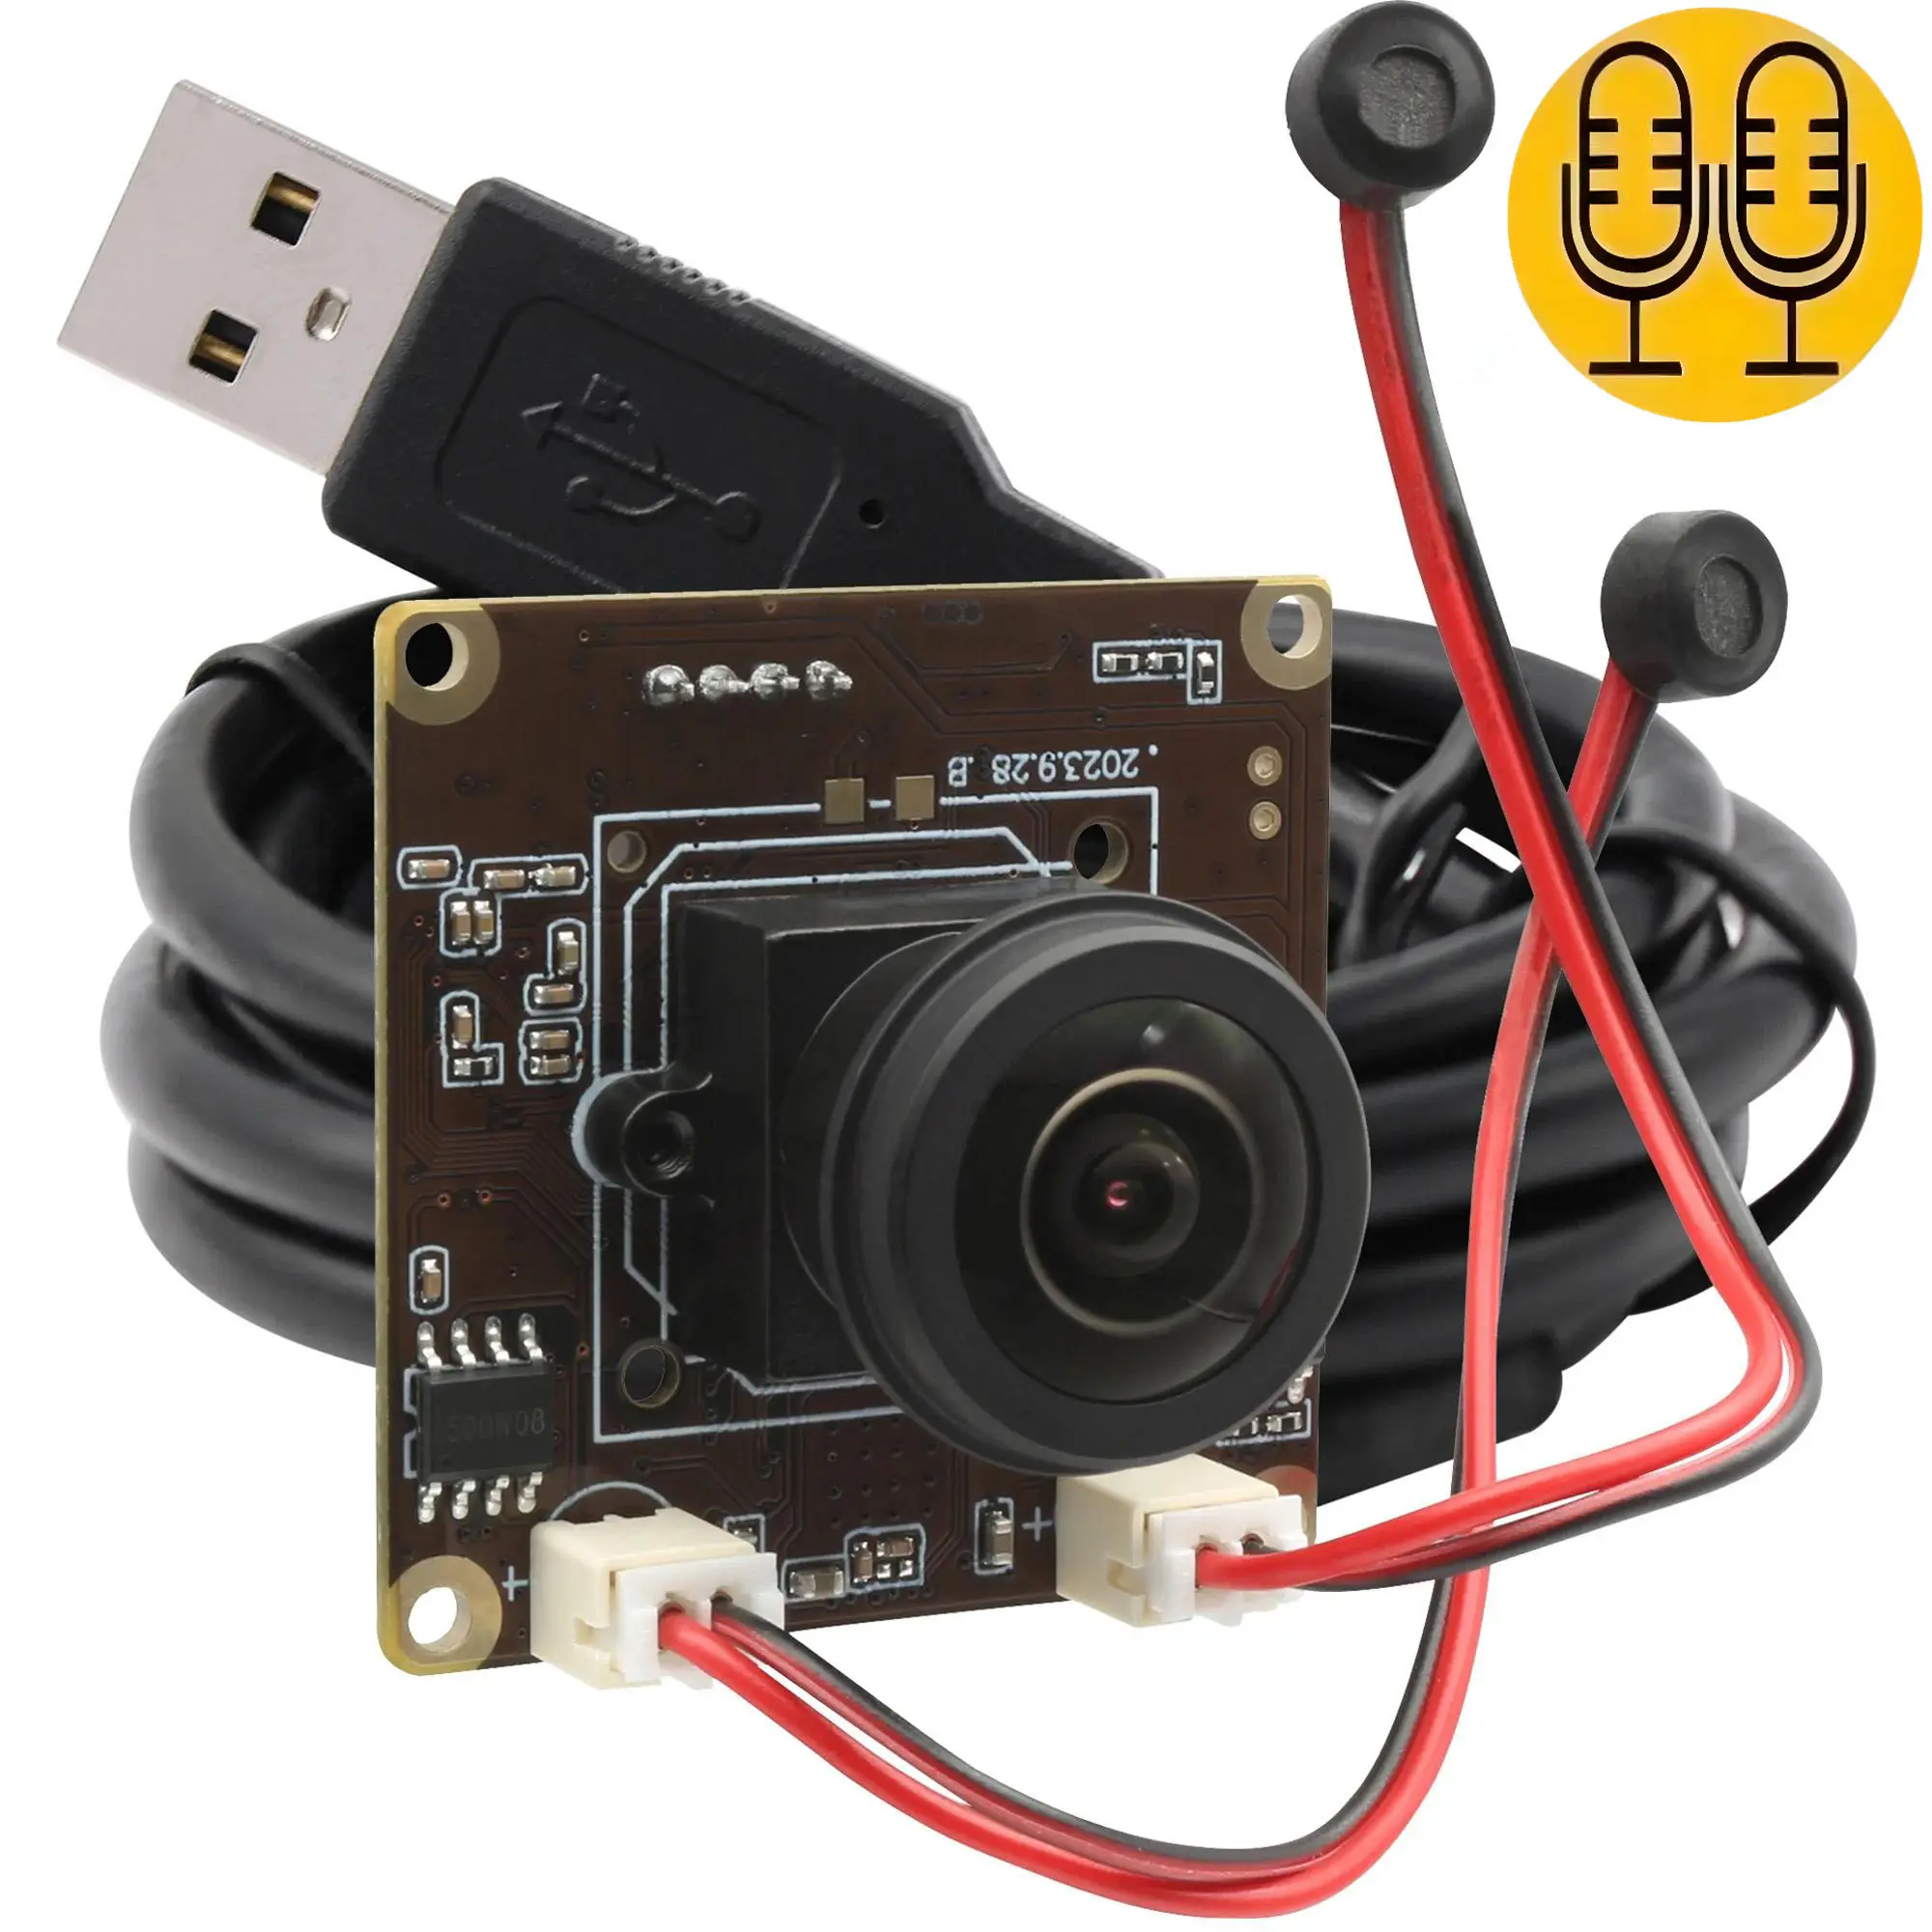 Caméra USB fisheye grand angle 180 degrés avec double microphone intégré, pilote gratuit, webcam Ultra HD 5MP 30FPS micro usb